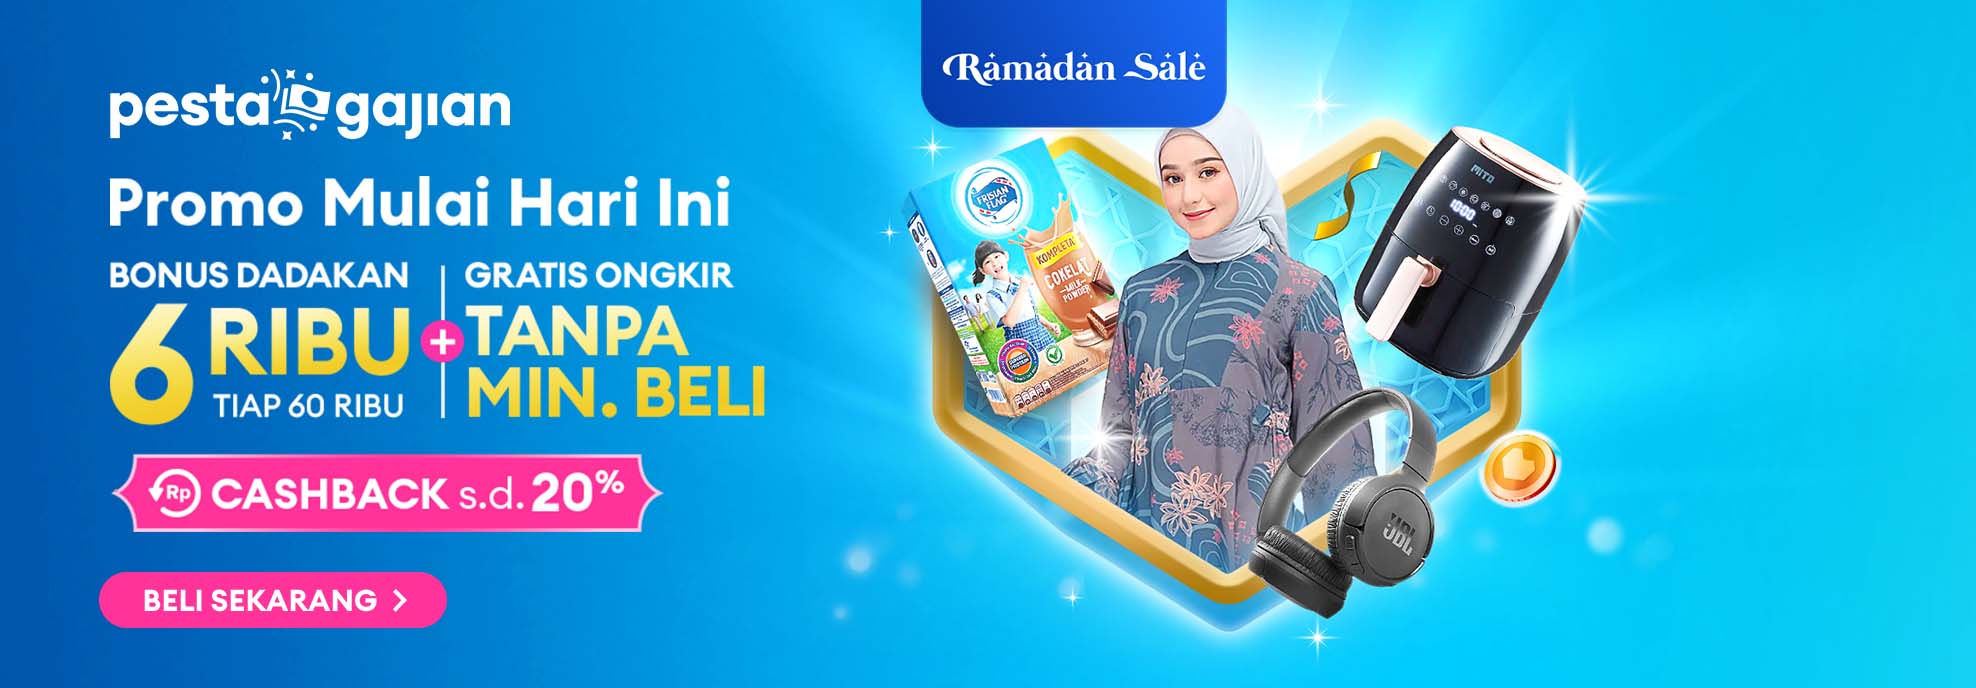 Ramadan Sale | Pesta Gajian Promo Mulai Hari Ini Bonus Dadakan 6 Ribu Tiap 60 Ribu + Gratis Ongkir Tanpa Min. Beli, Cashback s.d. 20%